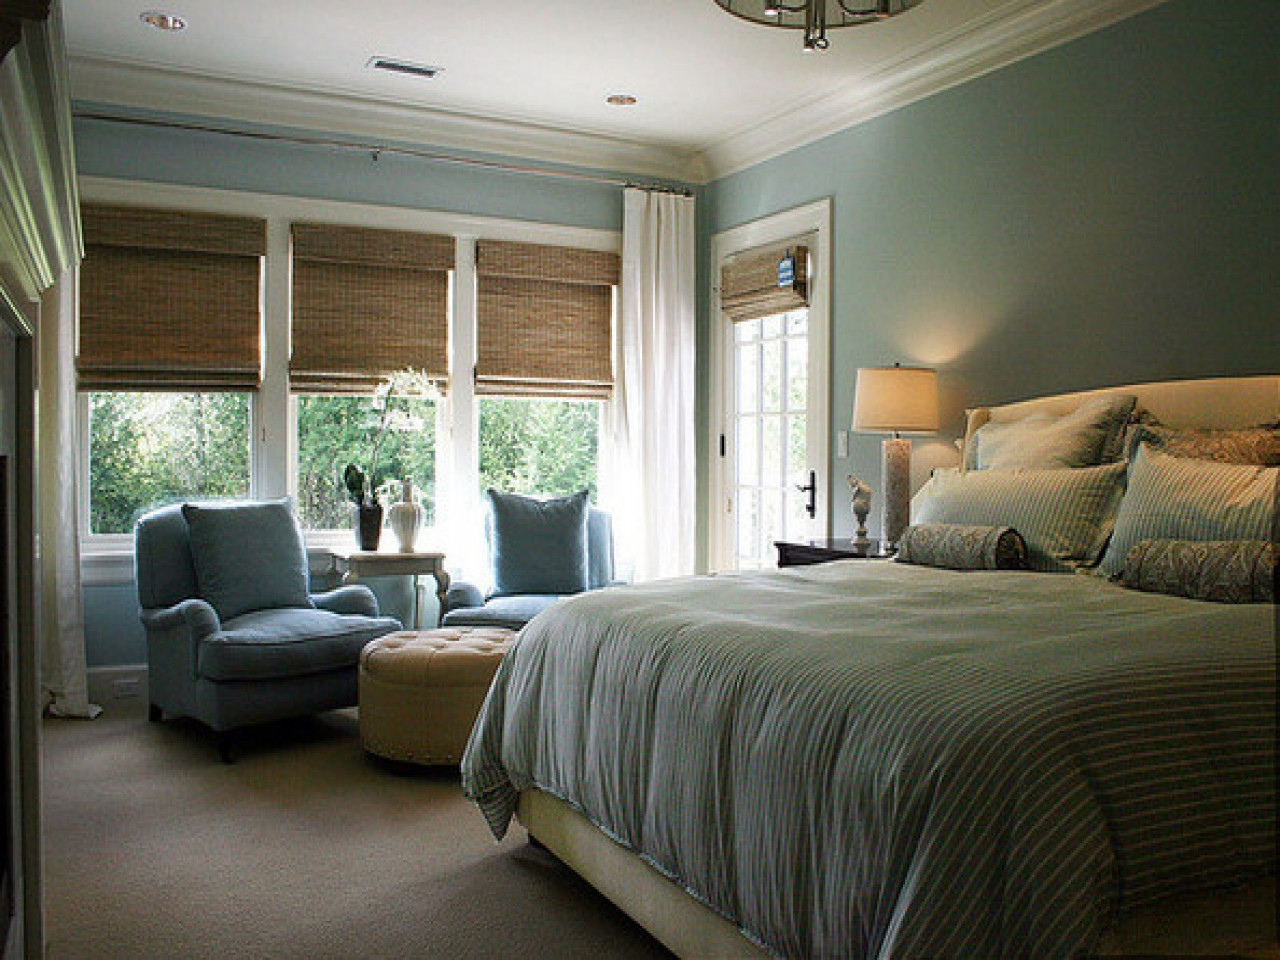 Benjamin Moore Bedroom Paint Colors
 Seaside pillows calming bedroom paint colors benjamin